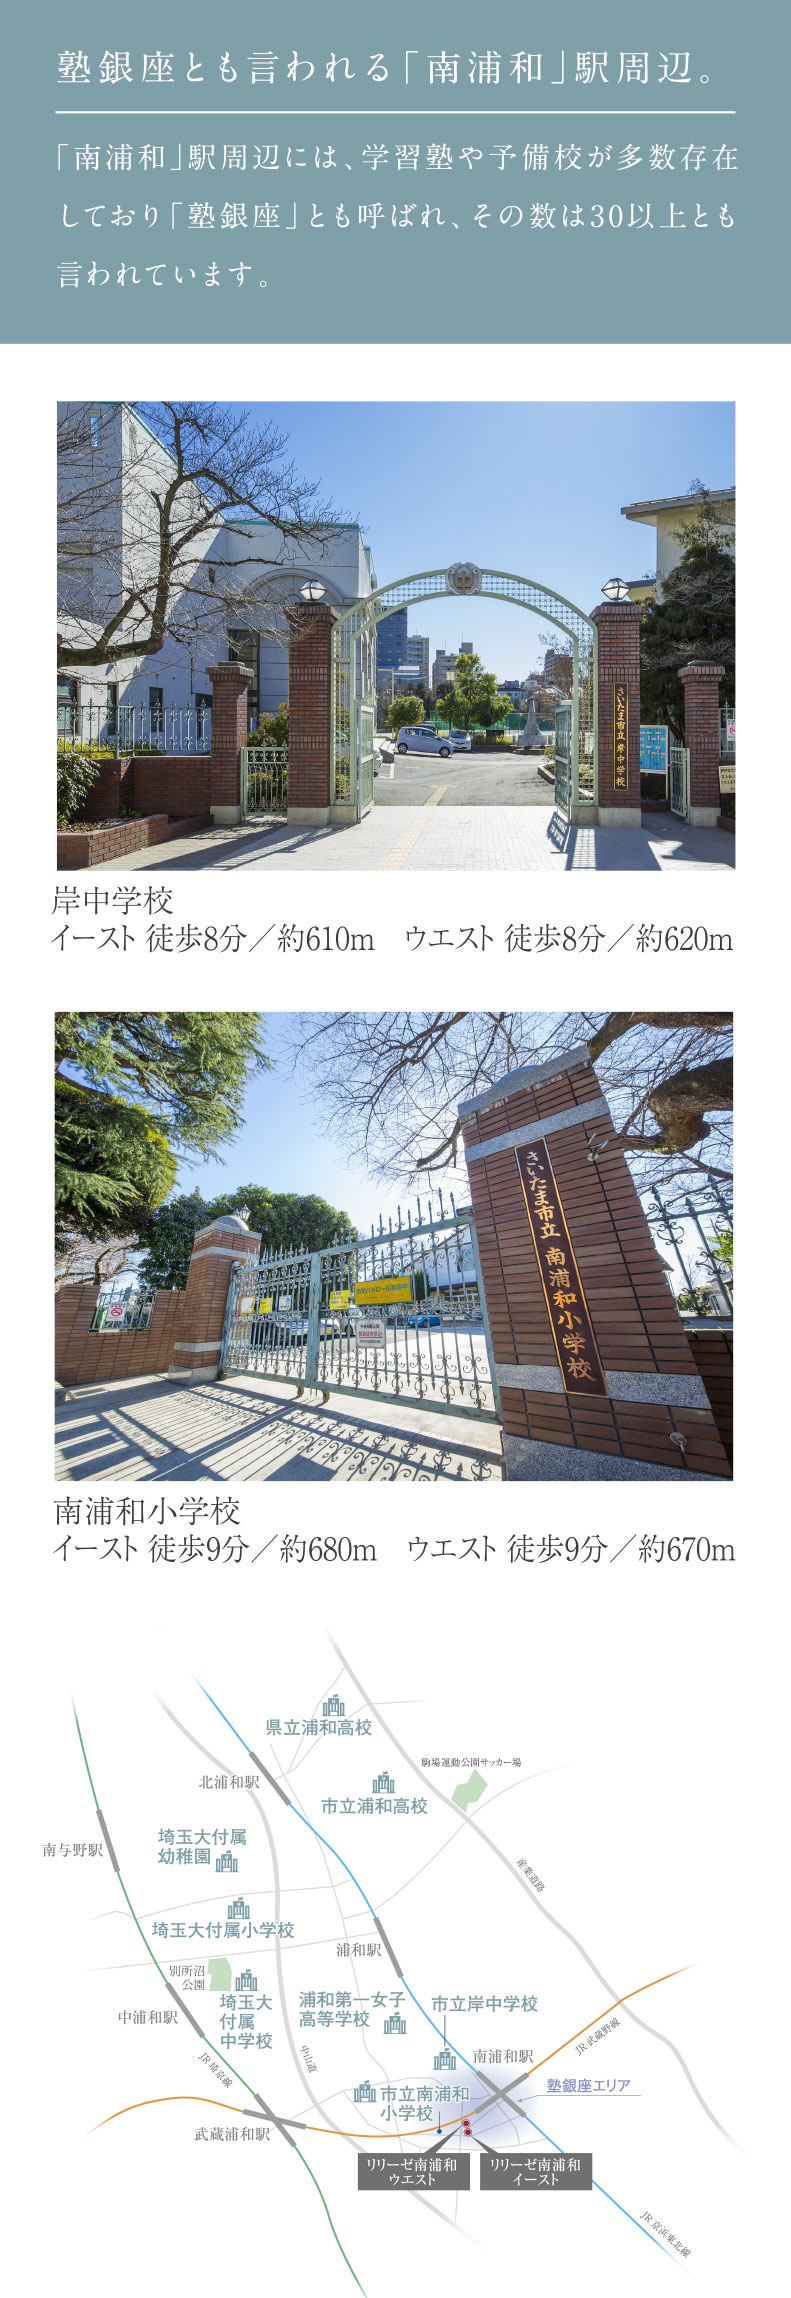 塾銀座とも言われる「南浦和」駅周辺。